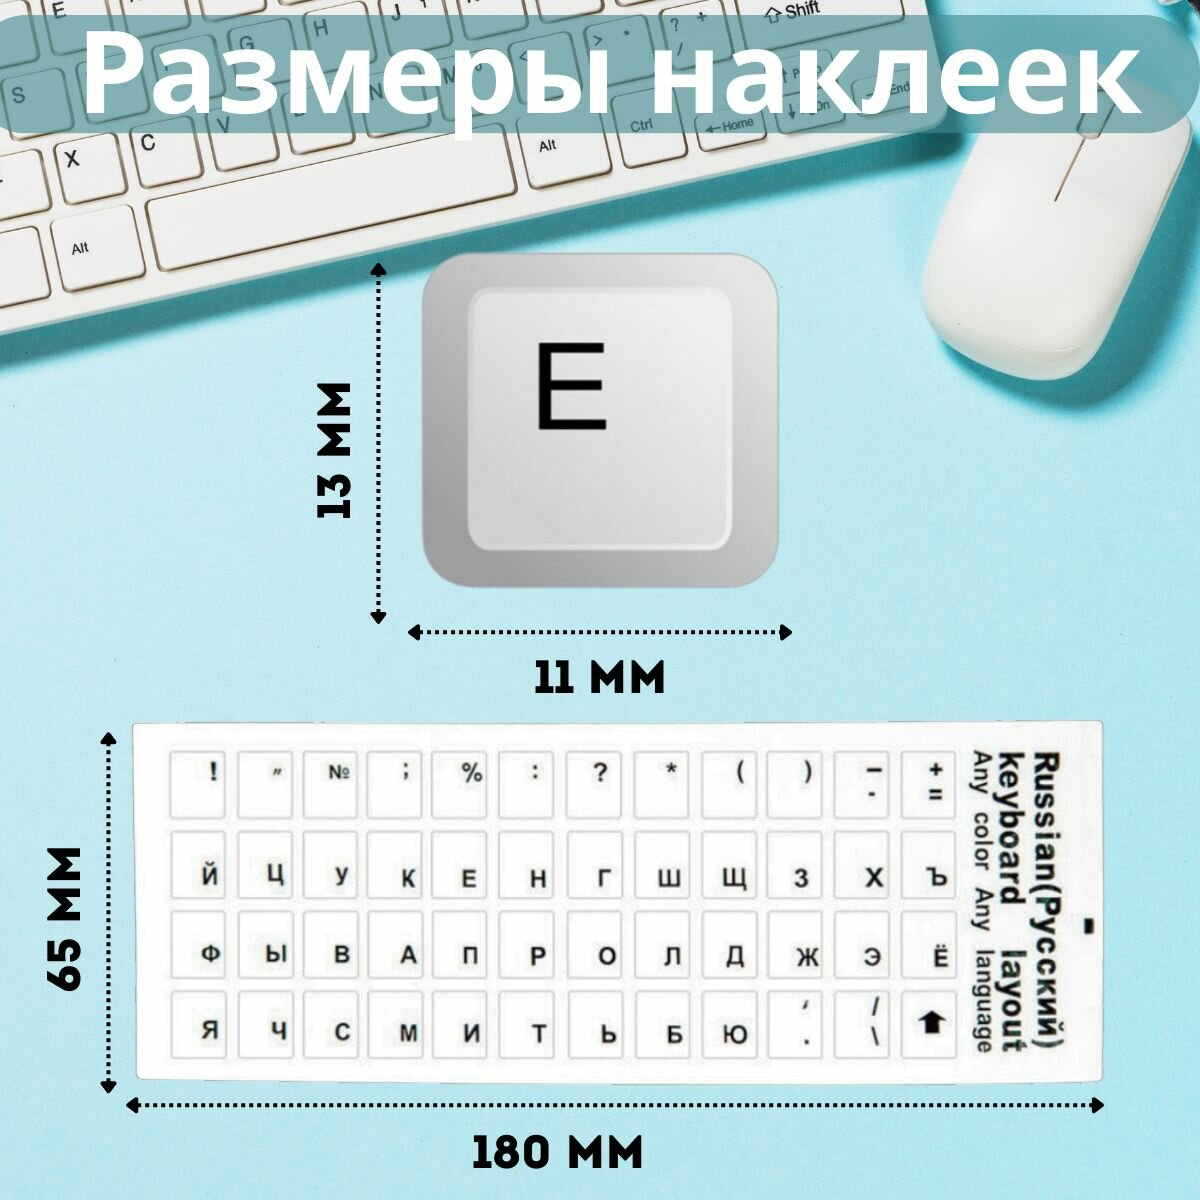 Наклейки прозрачные полимерные на белую клавиатуру русская раскладка, с русскими буквами, русификация, RUS, шрифт чёрный